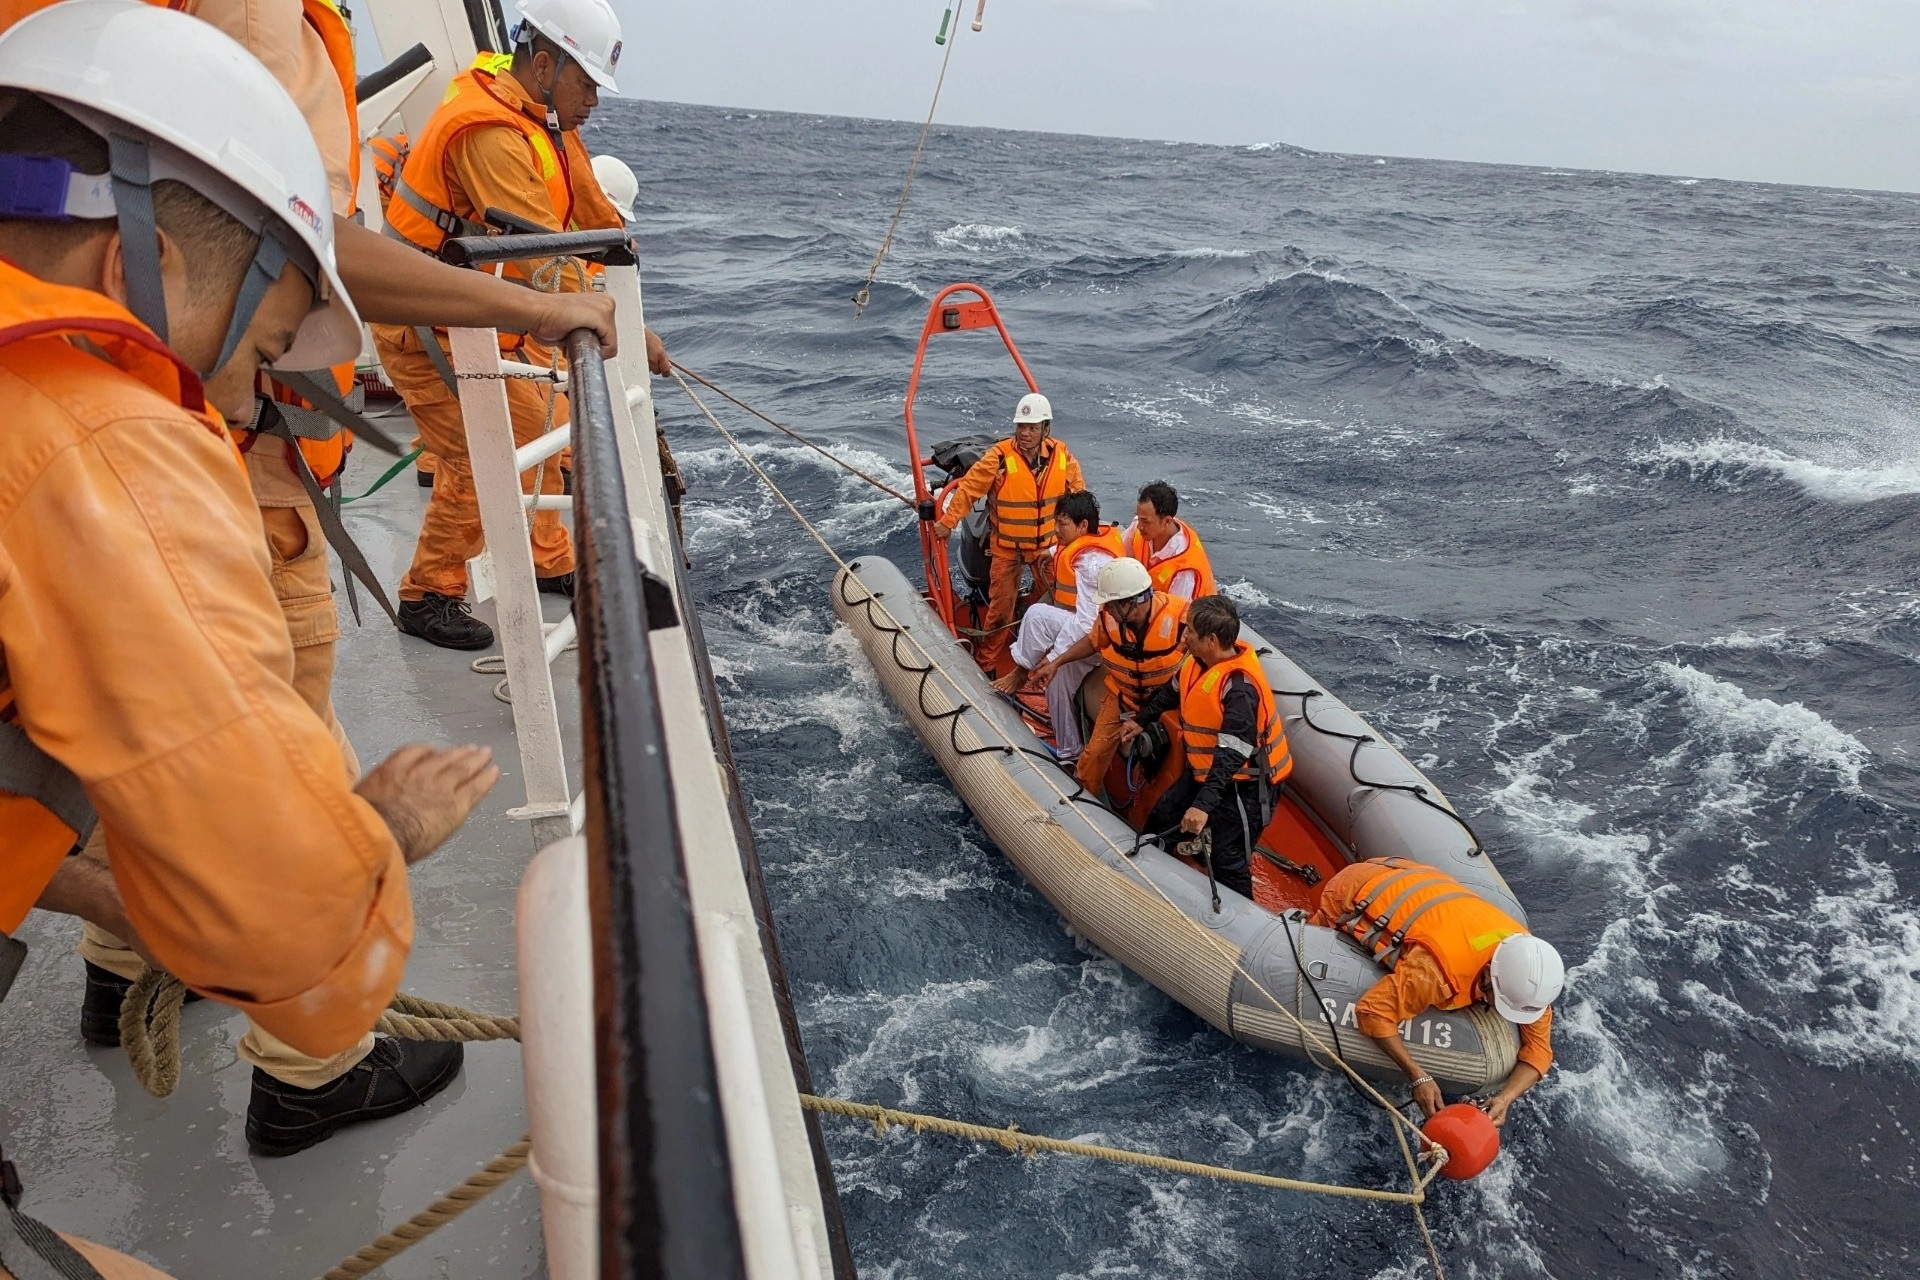 Tàu cá Bình Định gặp nạn, 4 người được cứu, 2 thuyền viên mất tích - 2